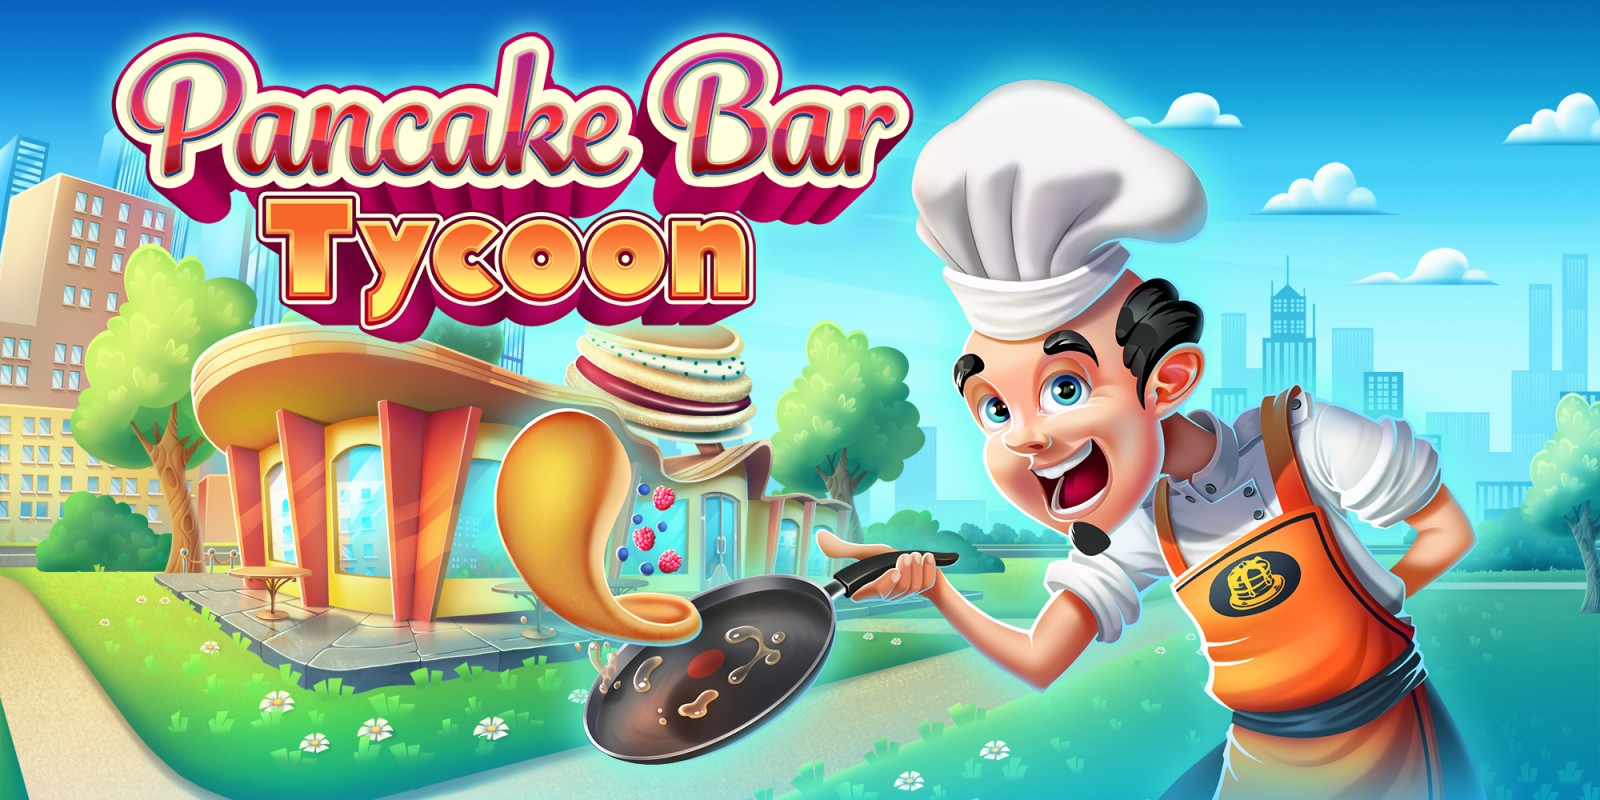 Pancake Bar Tycoon